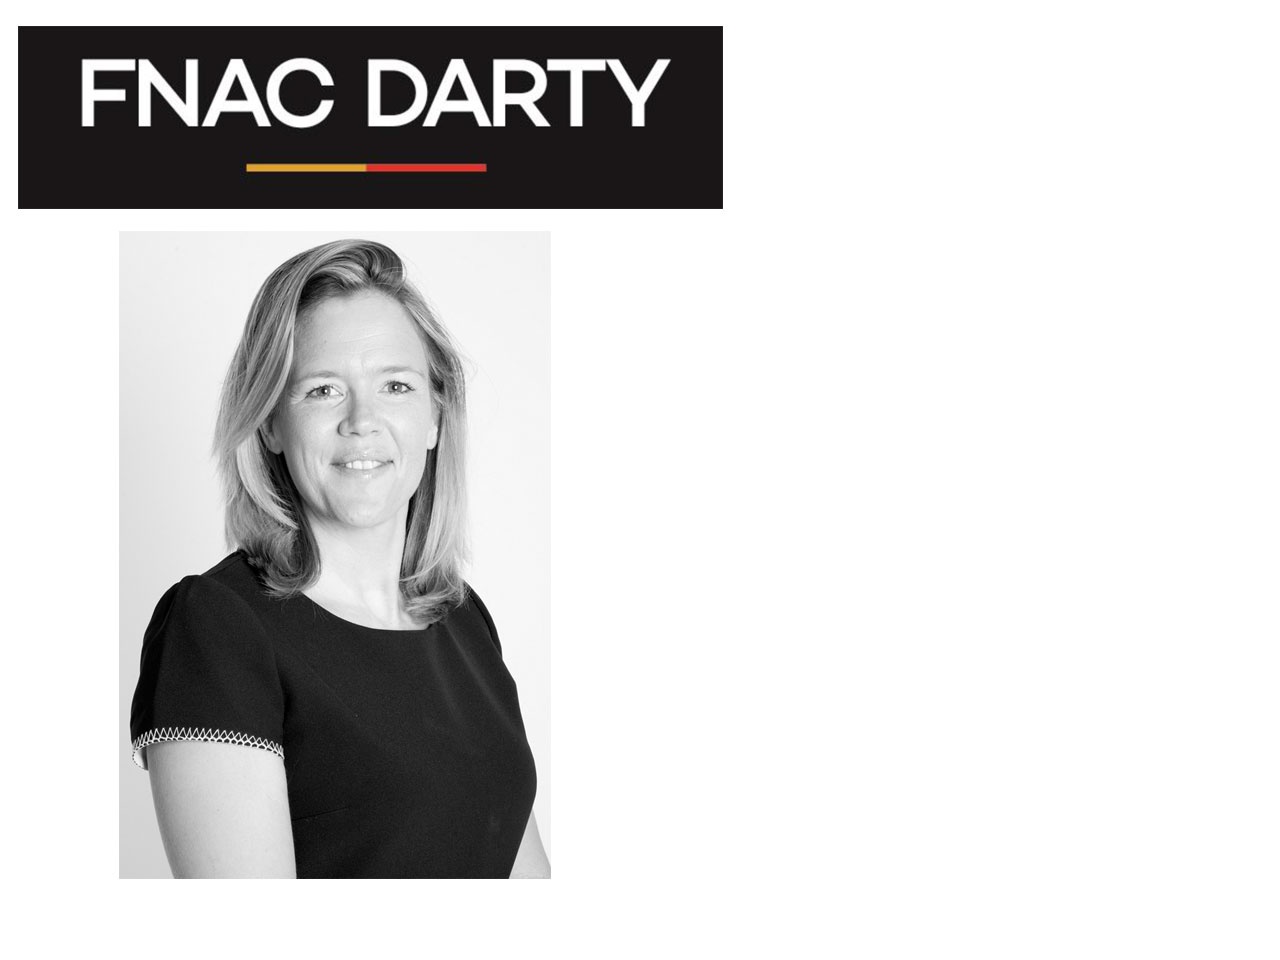 Groupe Fnac Darty : nomination d’une nouvelle Directrice Marketing et e-commerce